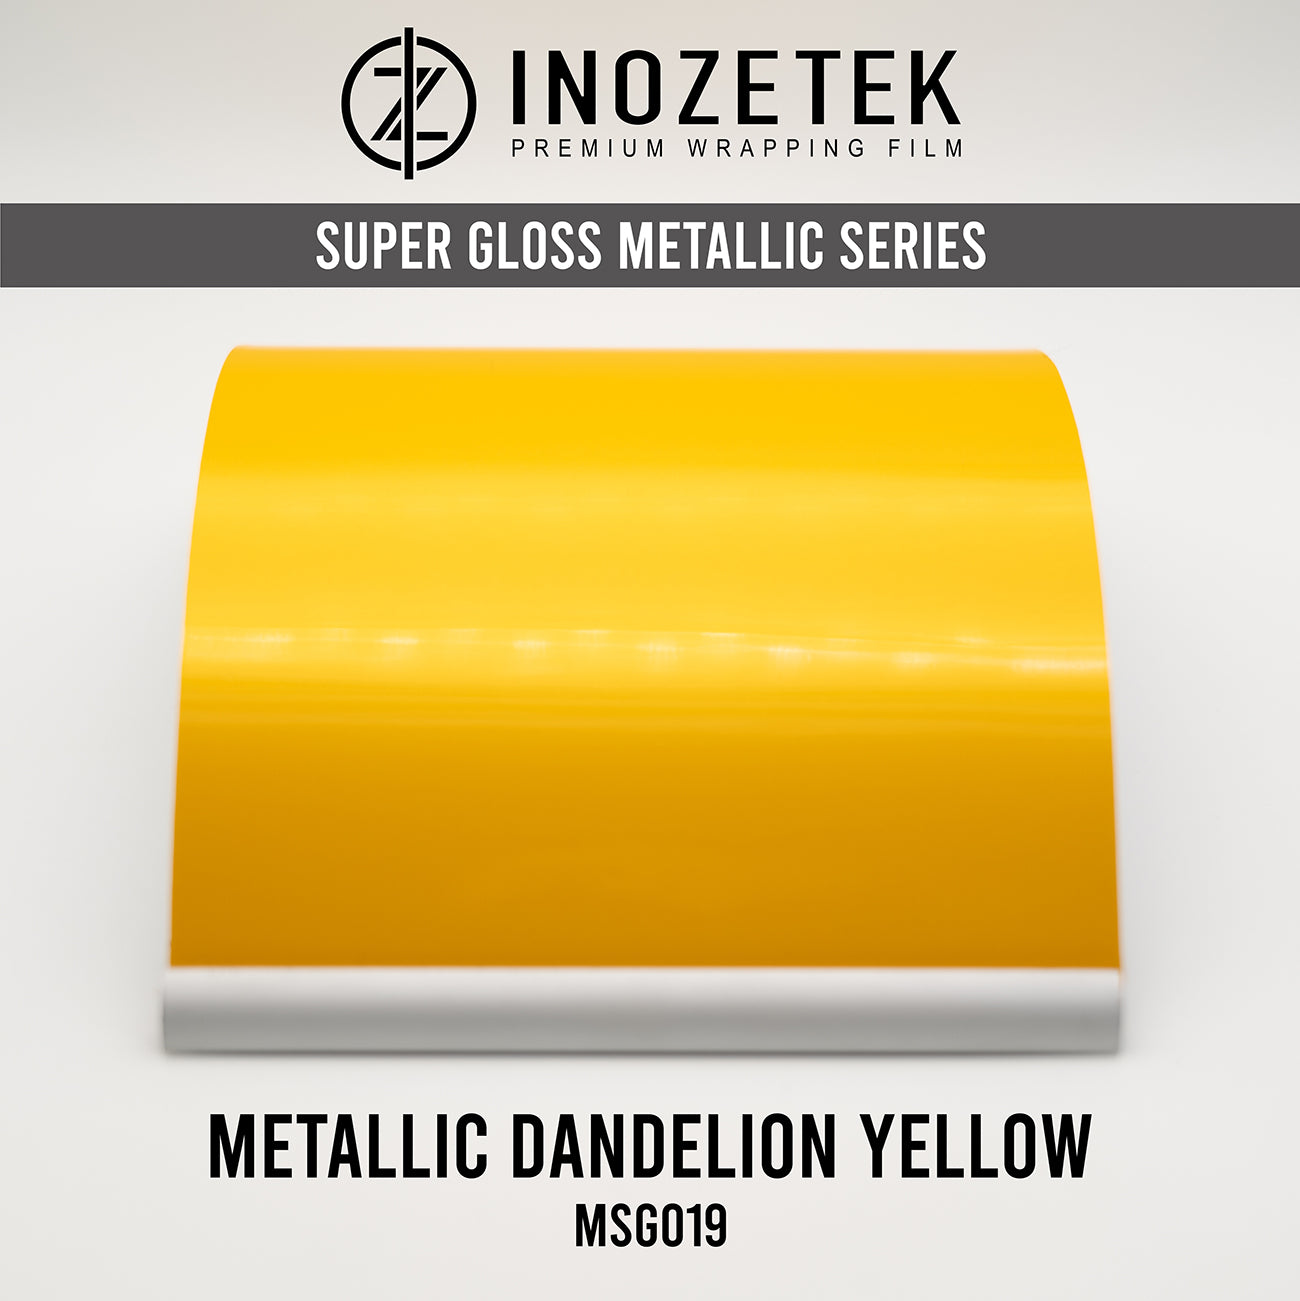 Gloss Metallic Dandelion Yellow by Inozetek (MSG019)